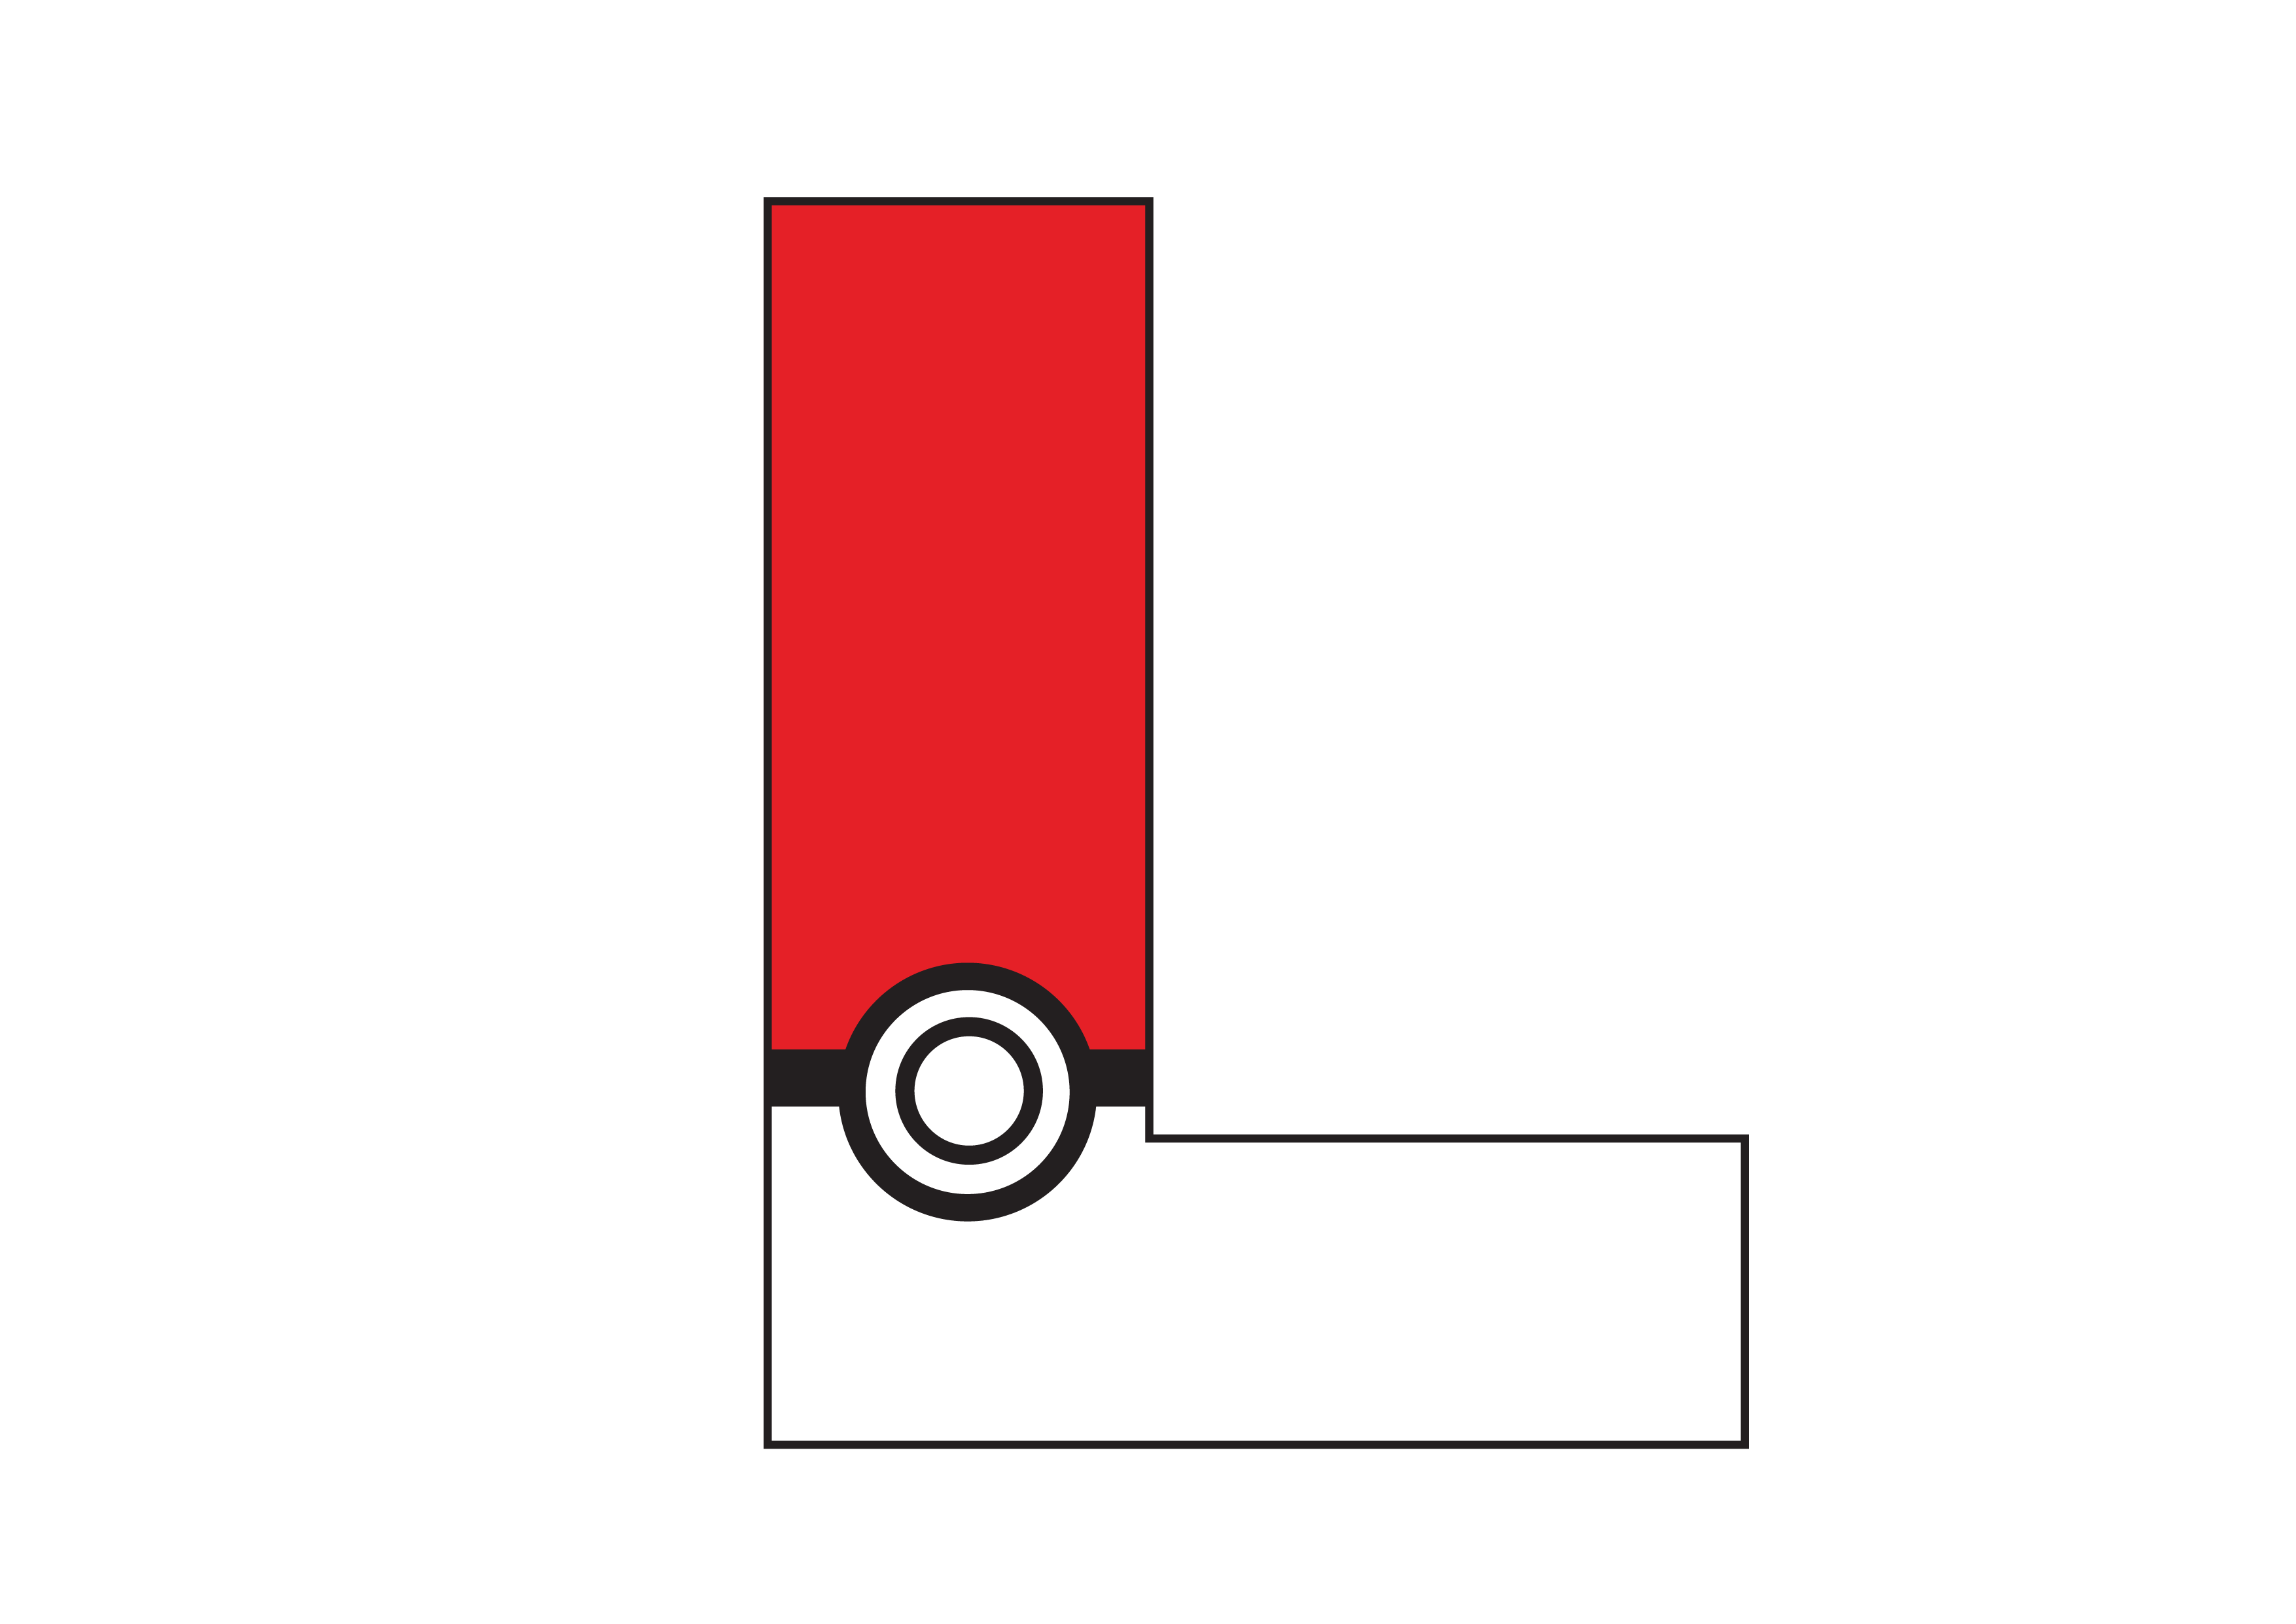 letra L Pokemon